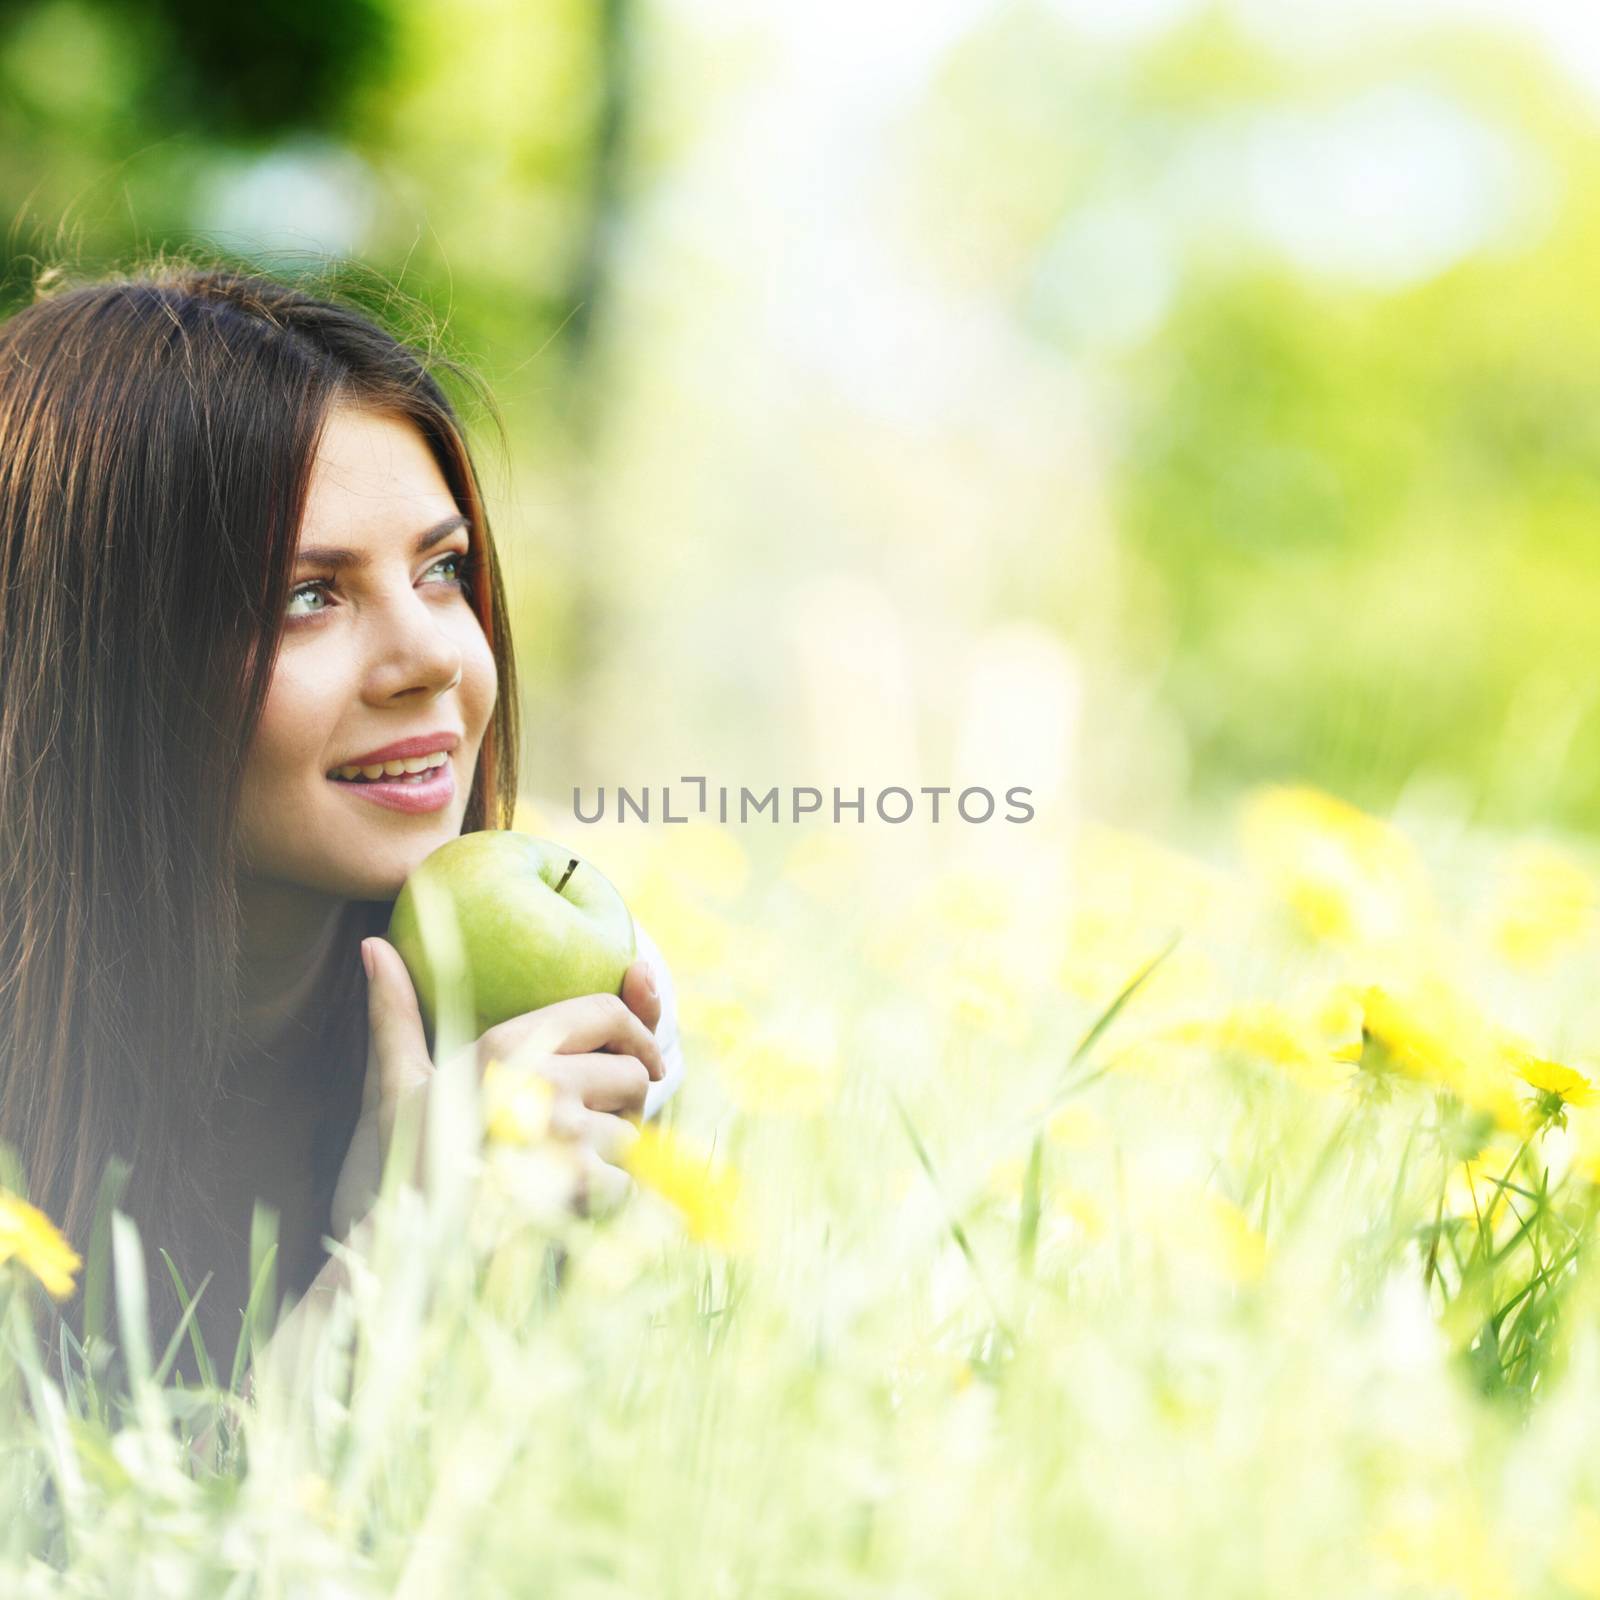 Woman on flower field by Yellowj